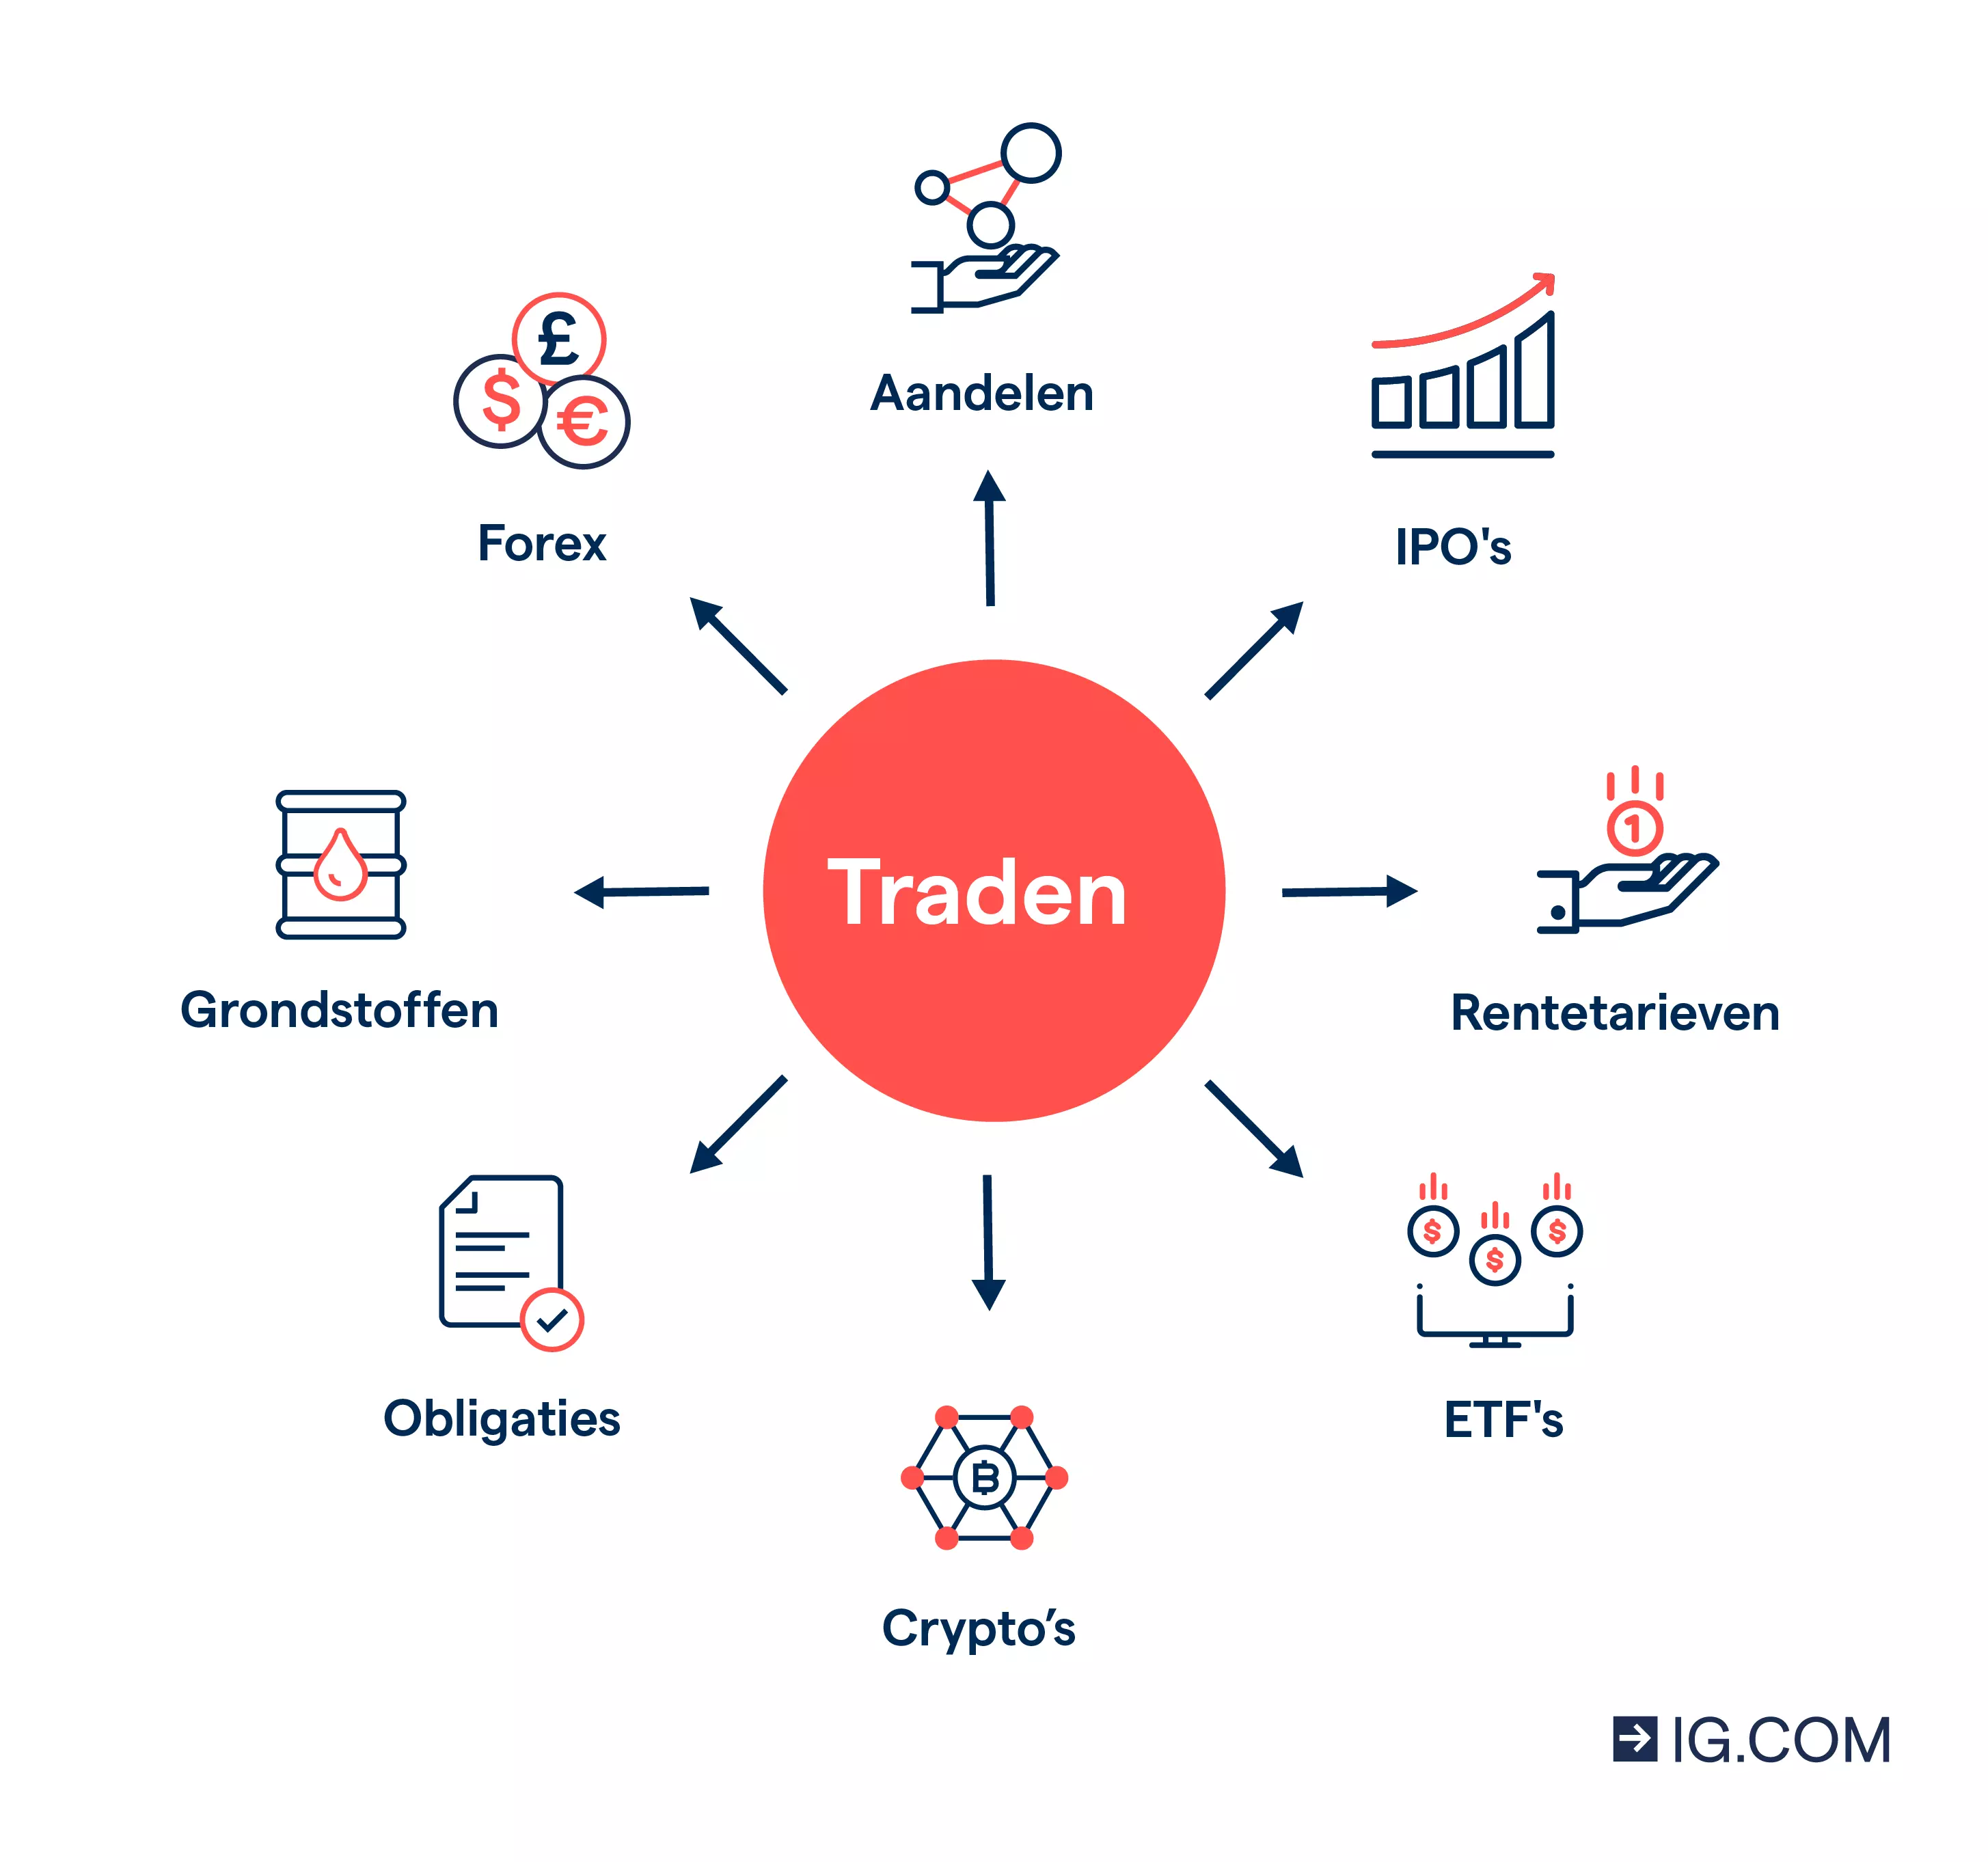 afbeelding van pictogrammen van de verschillende financiële activa waarin u kunt traden, zoals forex, aandelen, indices en grondstoffen.